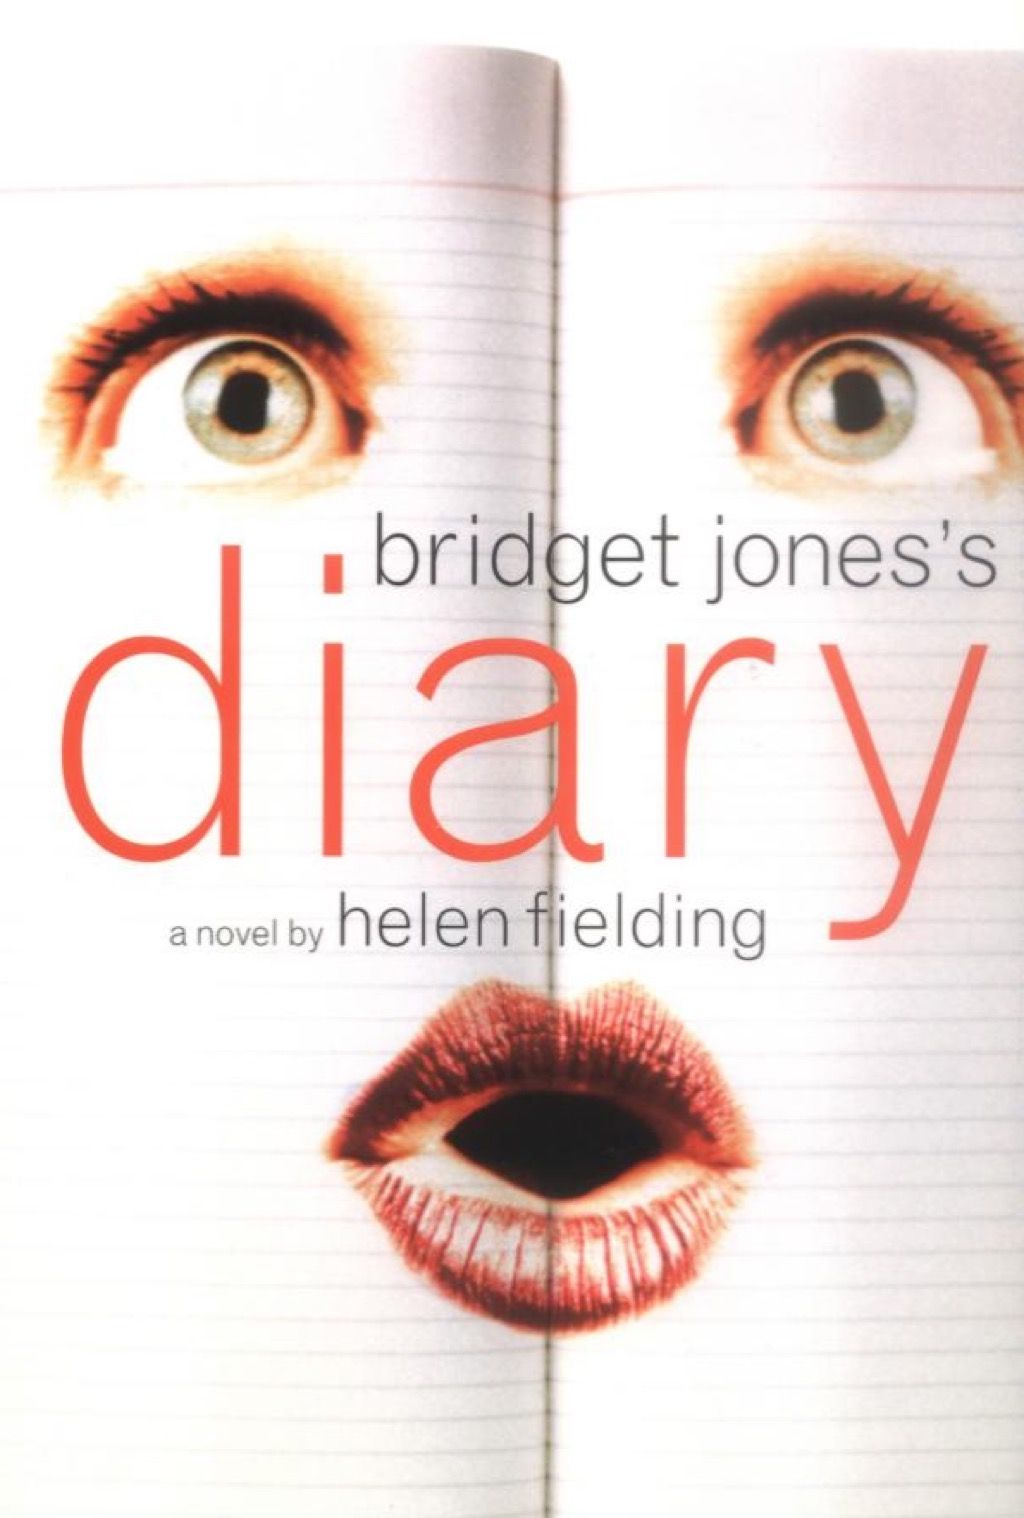 Deník Bridget Jonesové, knihy, které by měla číst každá žena po 40 letech